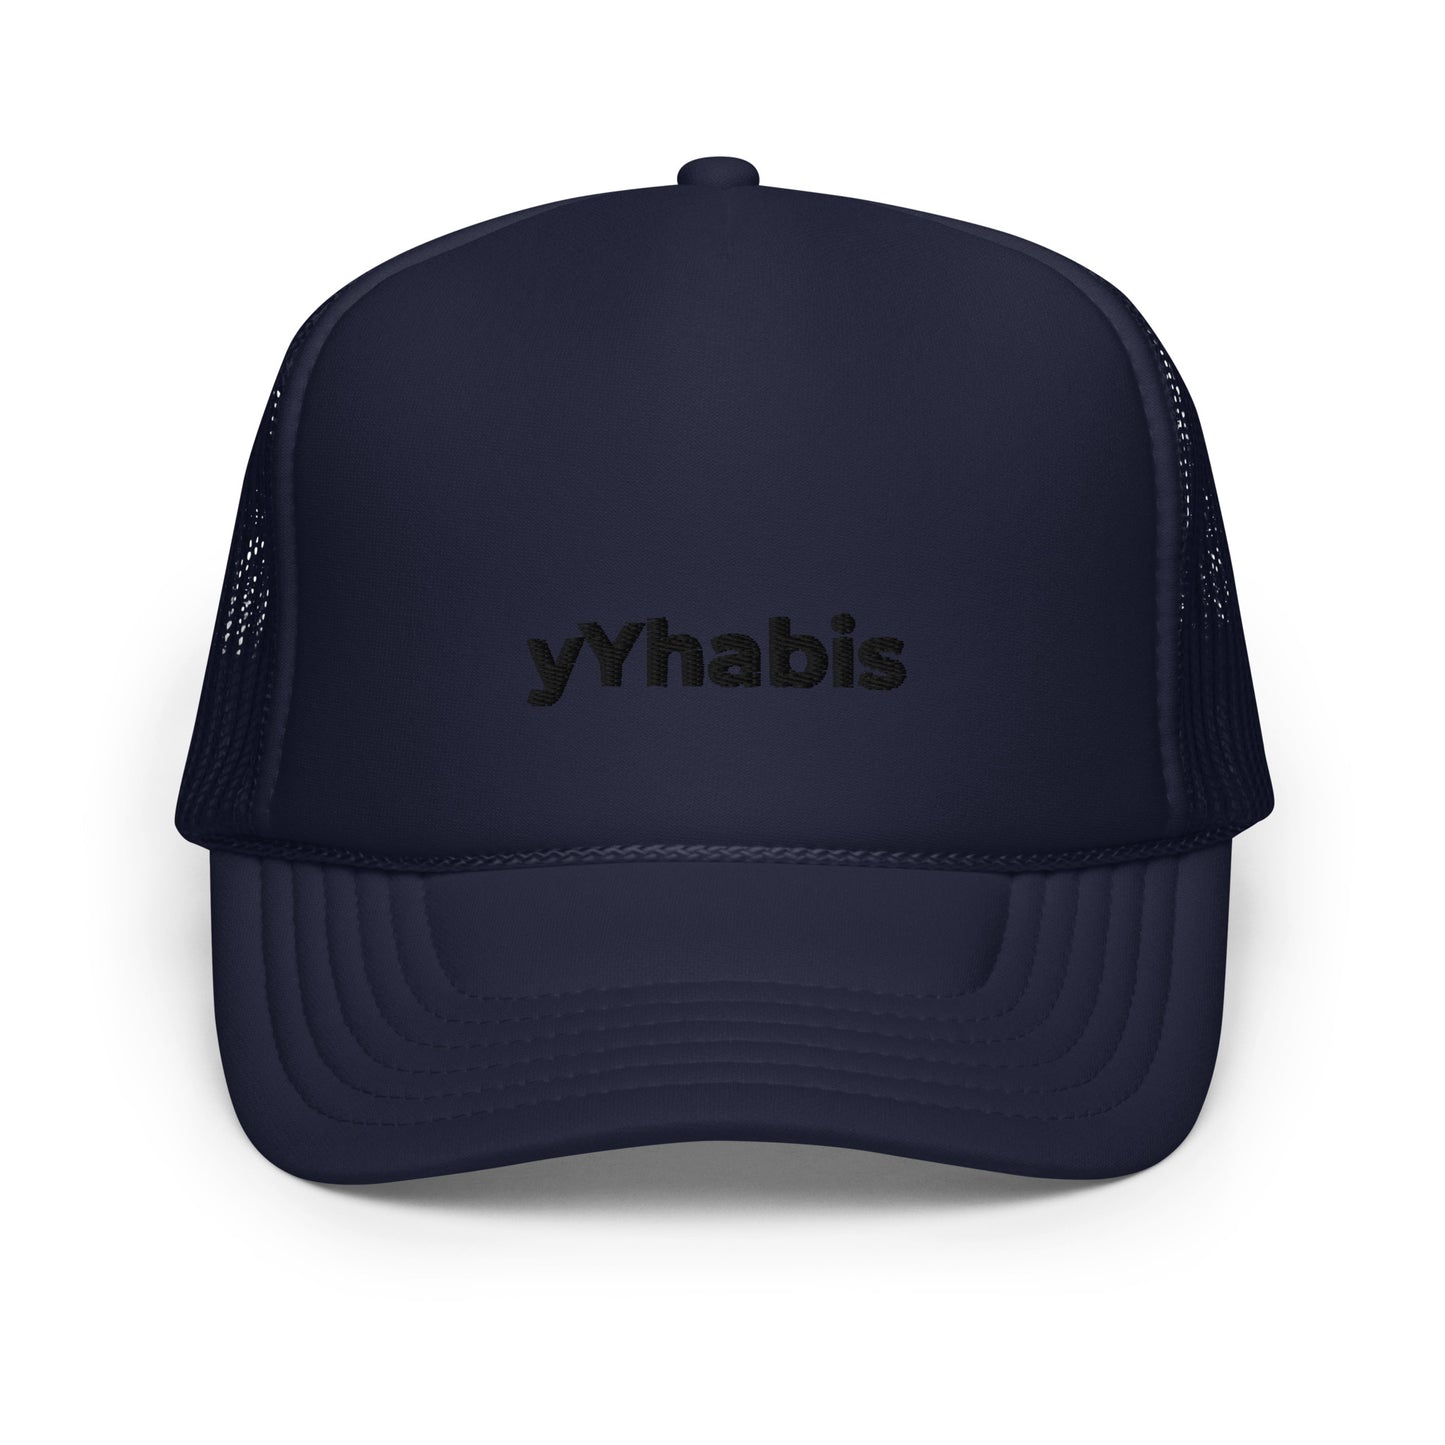 yYhabis Foam Snap Back Trucker Hat